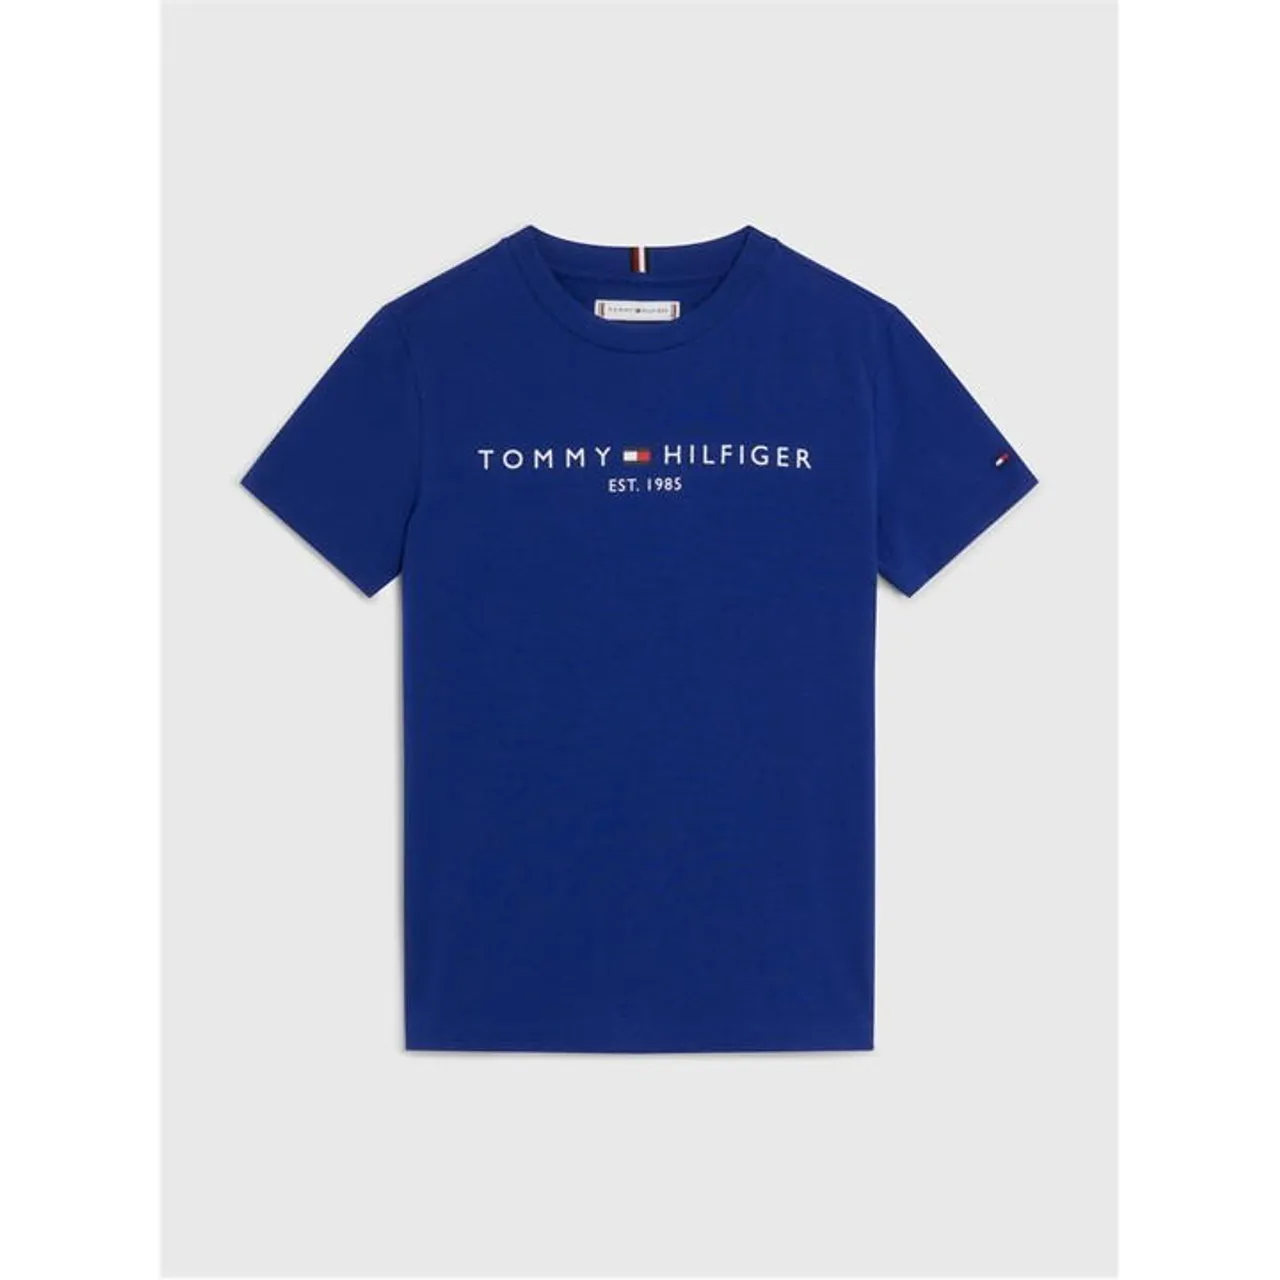 Tommy Hilfiger Children's Essential T Shirt - Blue